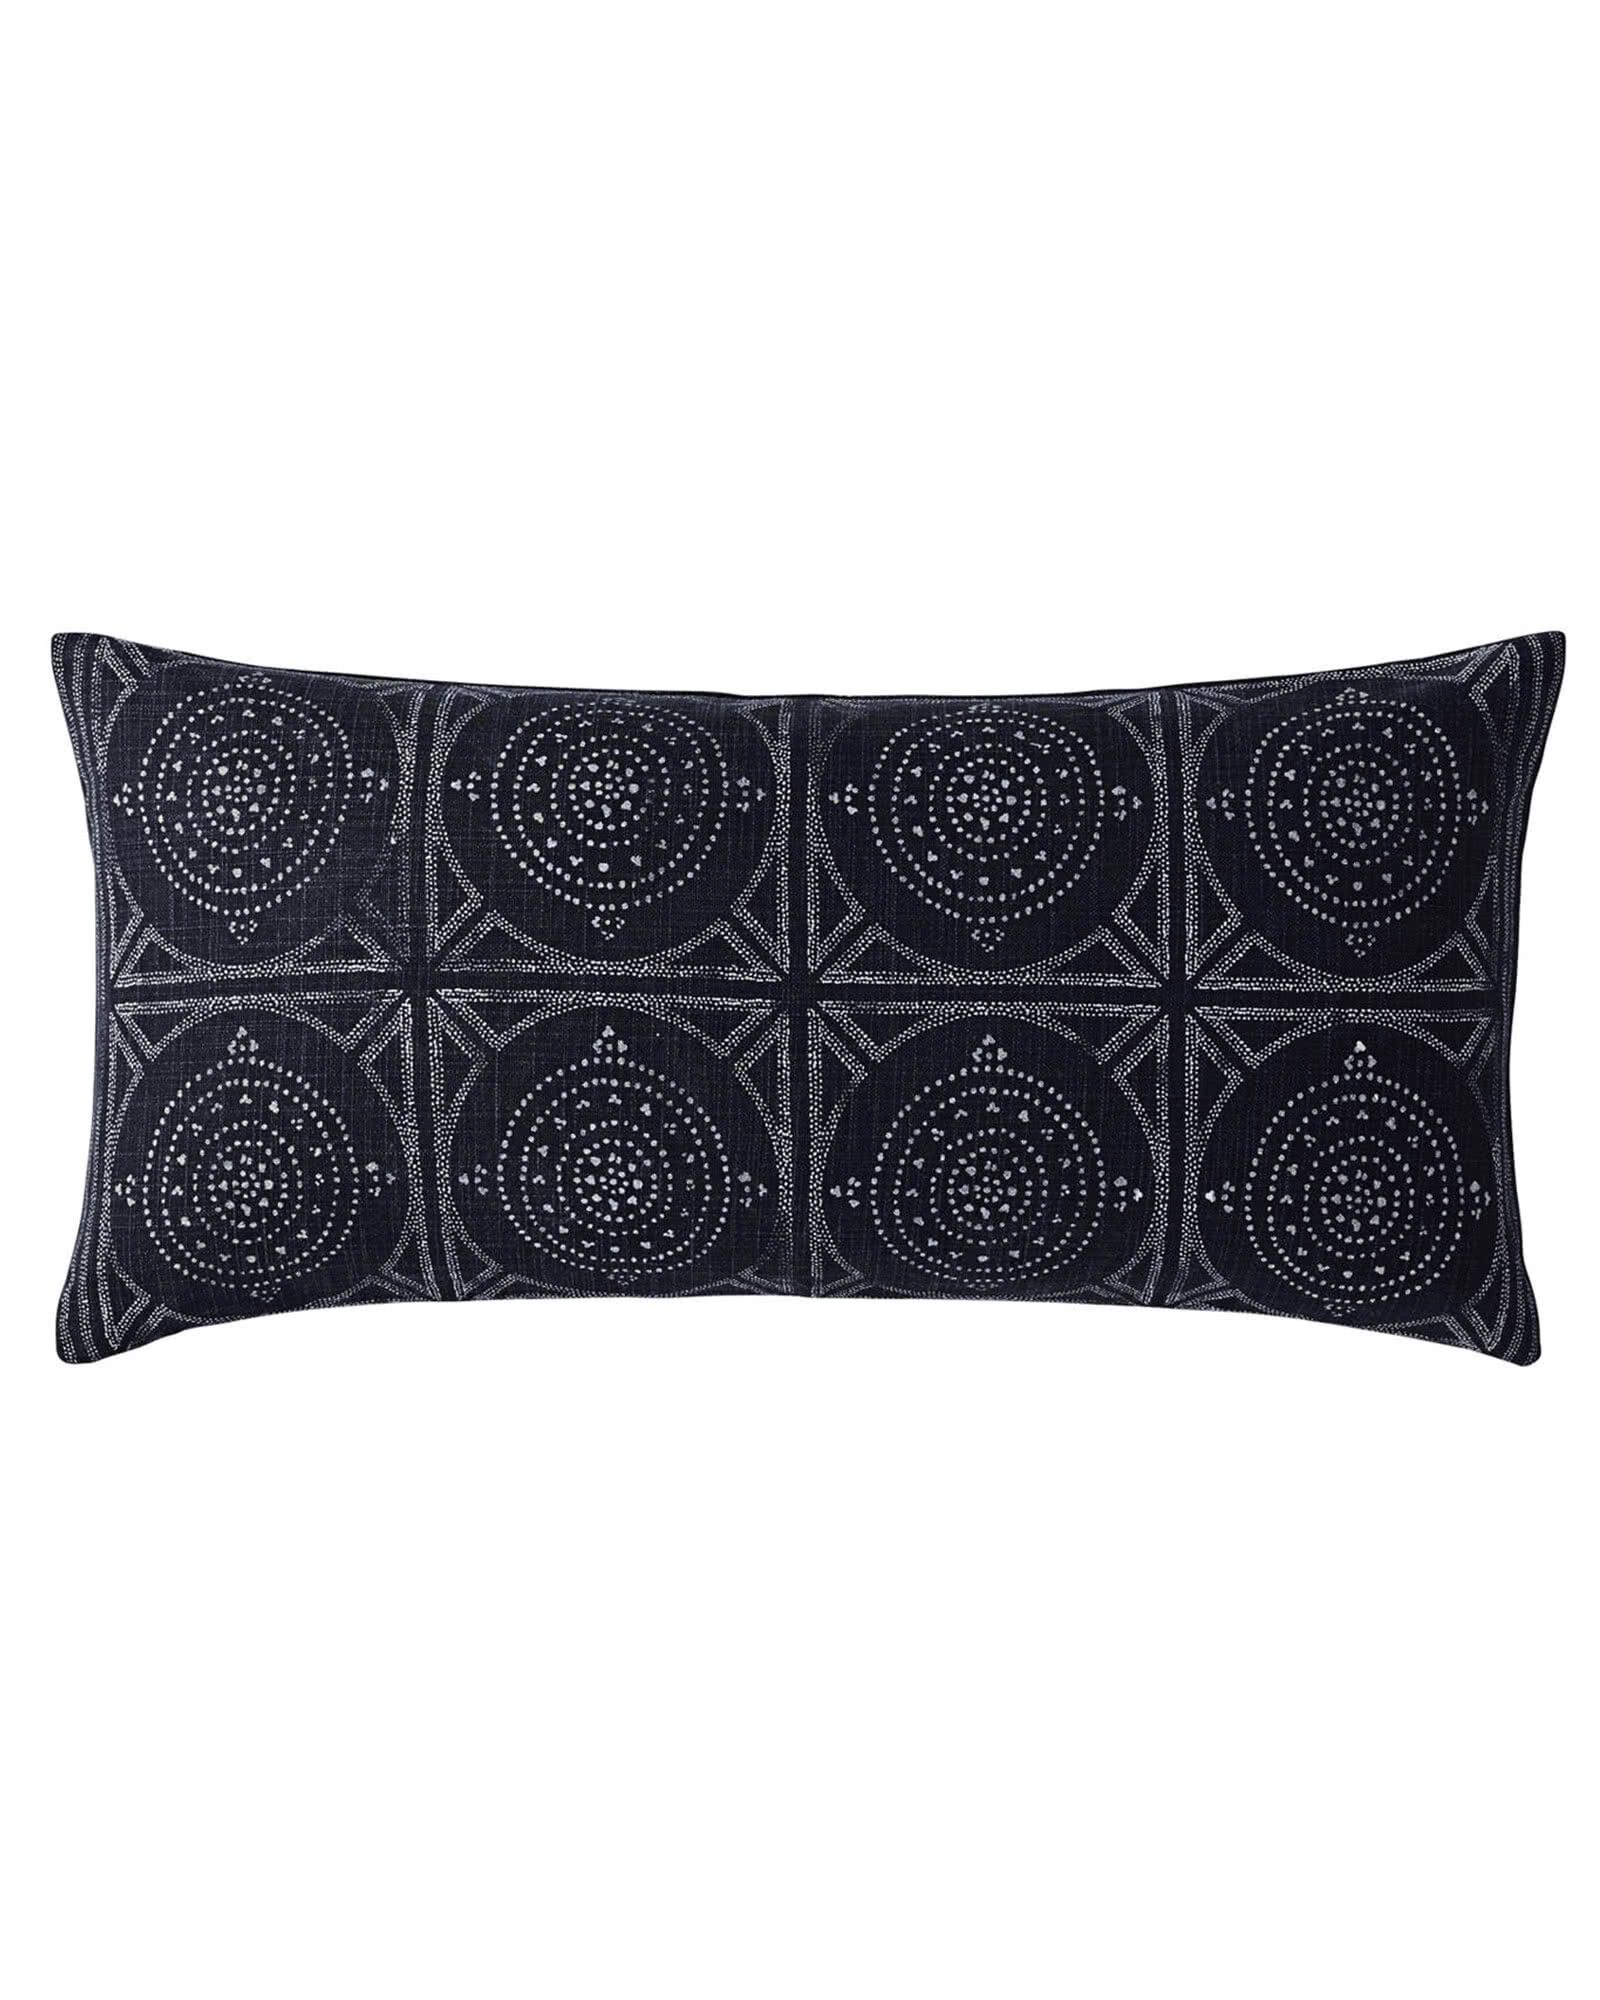 Camille Mosaic Lumbar Pillow Cover